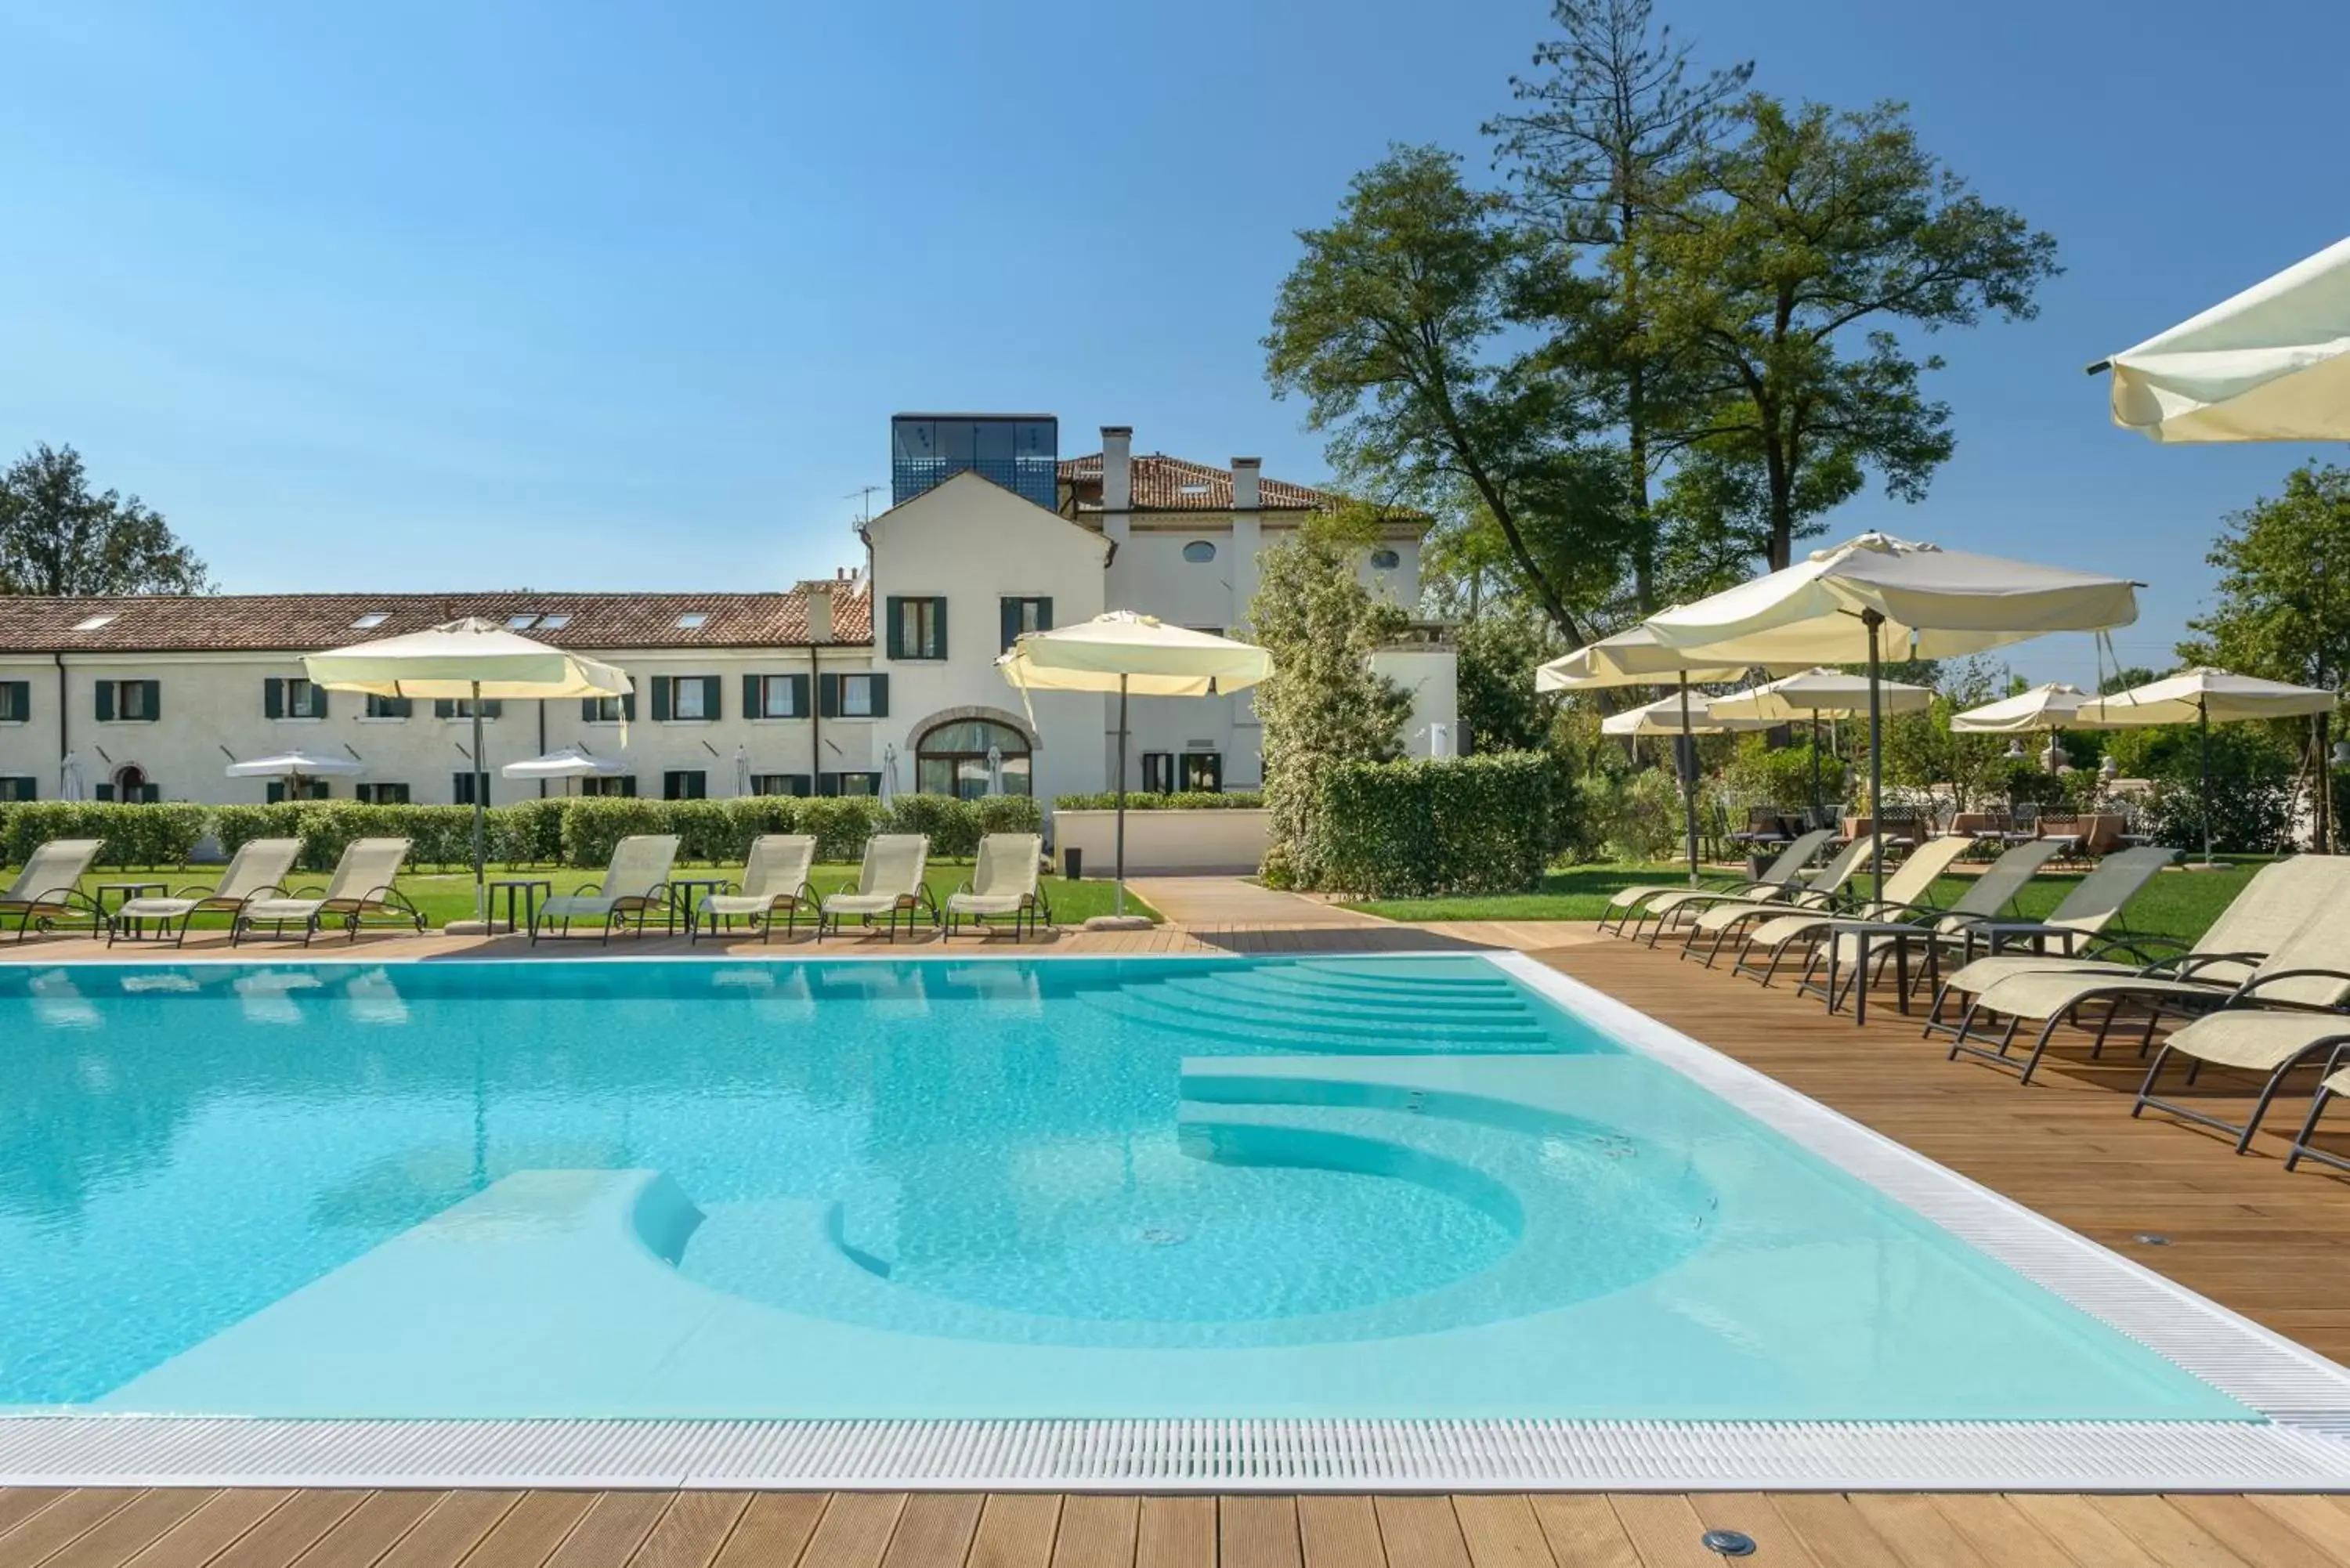 Swimming pool, Property Building in Hotel Villa Barbarich Venice Mestre